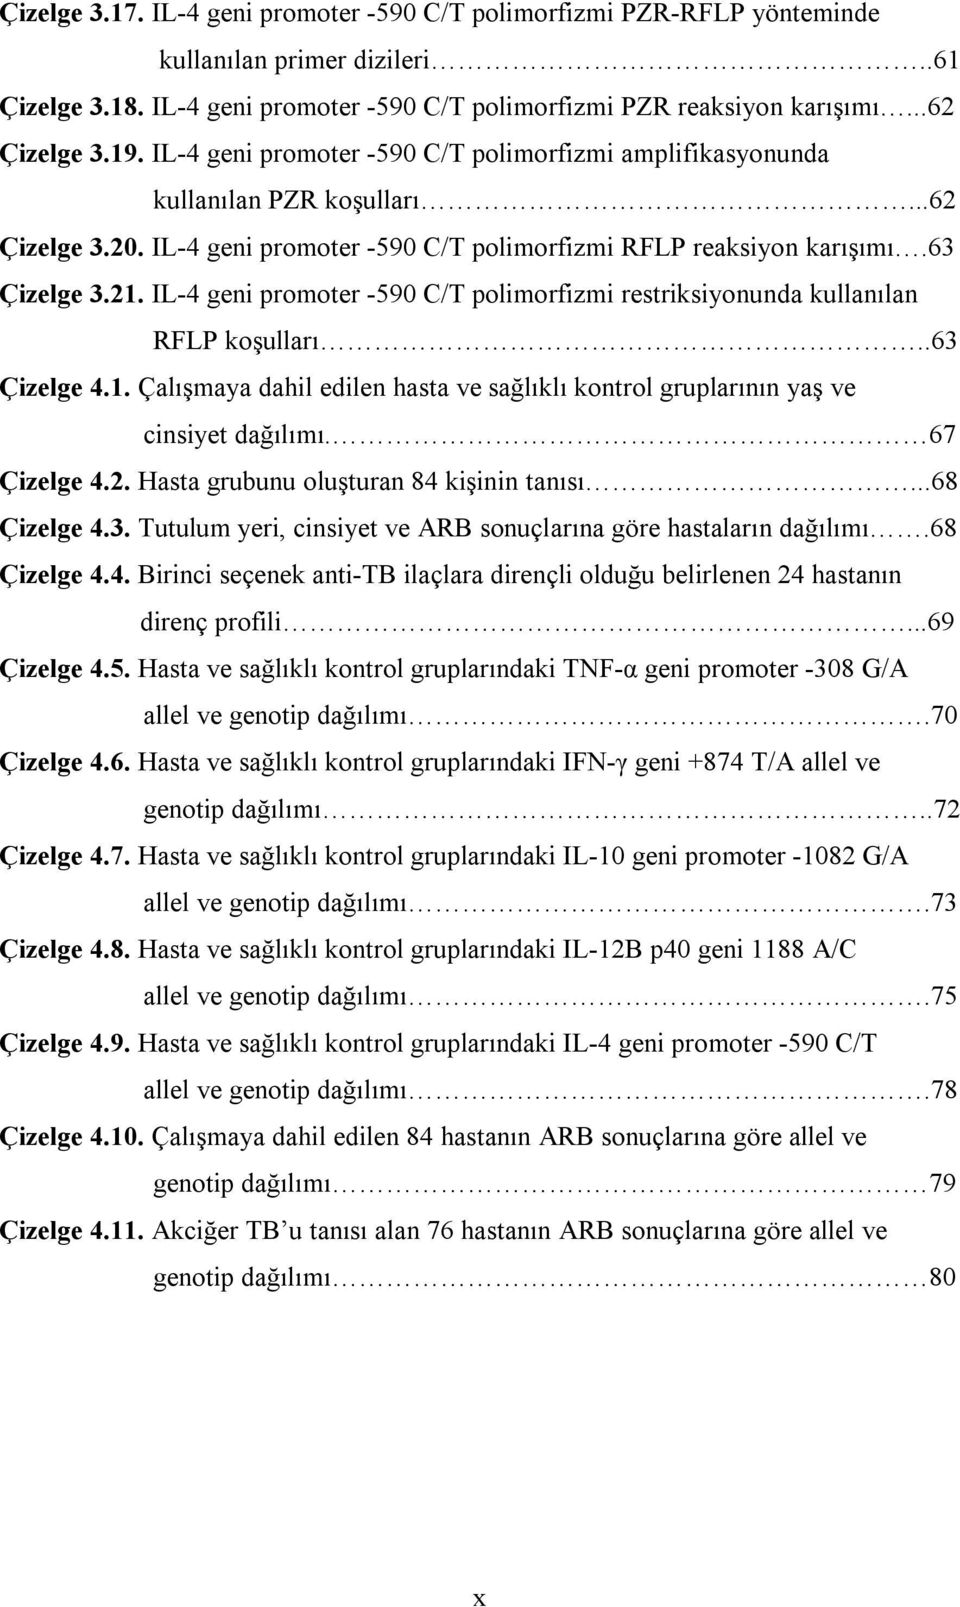 IL-4 geni promoter -590 C/T polimorfizmi restriksiyonunda kullanılan RFLP koşulları..63 Çizelge 4.1. Çalışmaya dahil edilen hasta ve sağlıklı kontrol gruplarının yaş ve cinsiyet dağılımı.